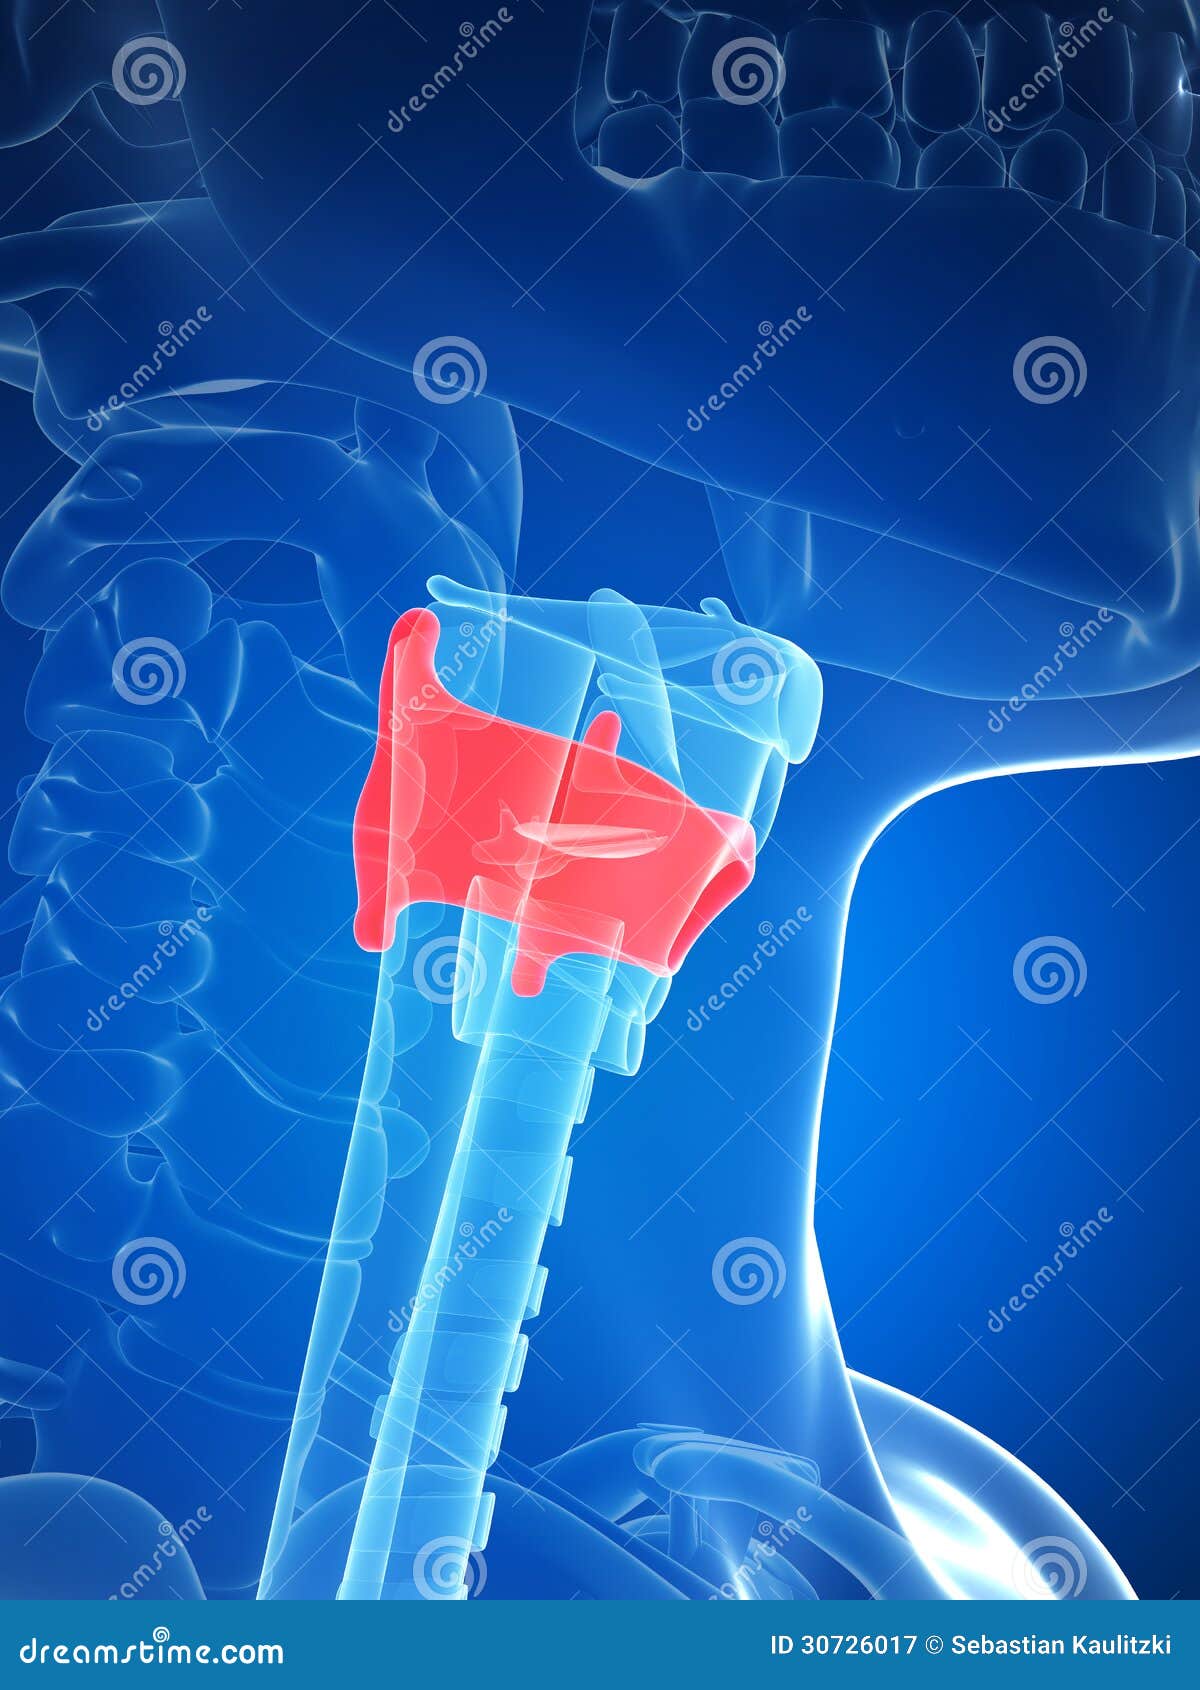 larynx anatomy - thyroid cartilage